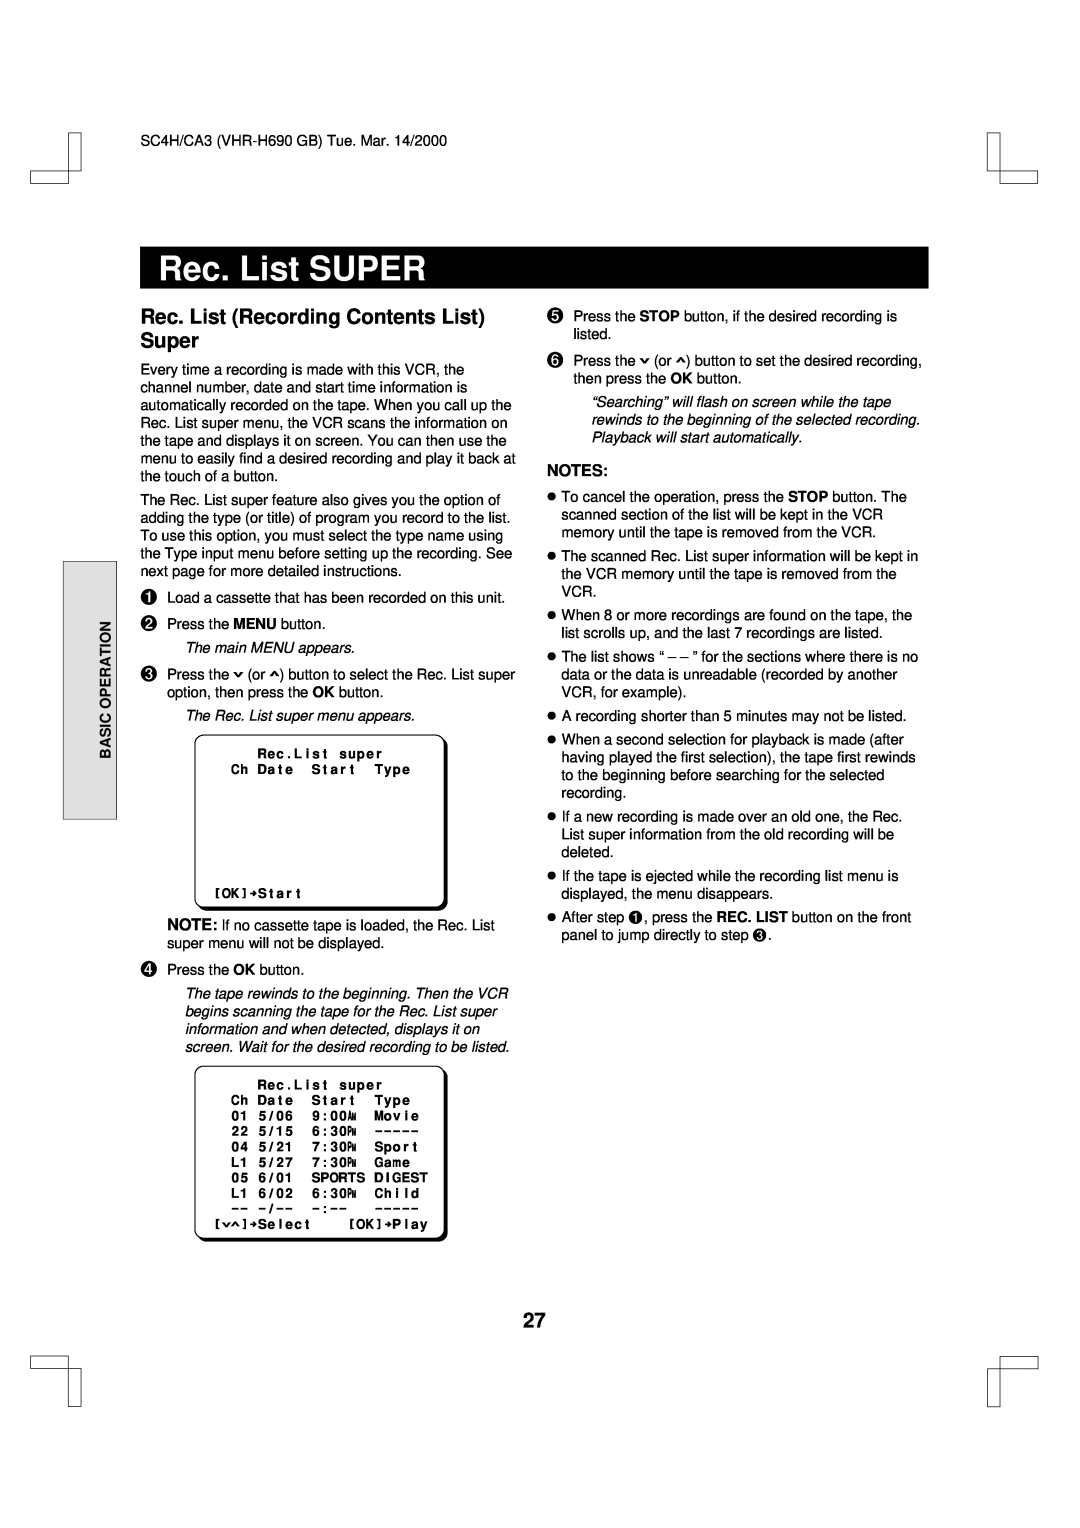 Sanyo VHR-H690 Rec. List SUPER, Rec. List Recording Contents List Super, Basic Operation, The Rec. List super menu appears 